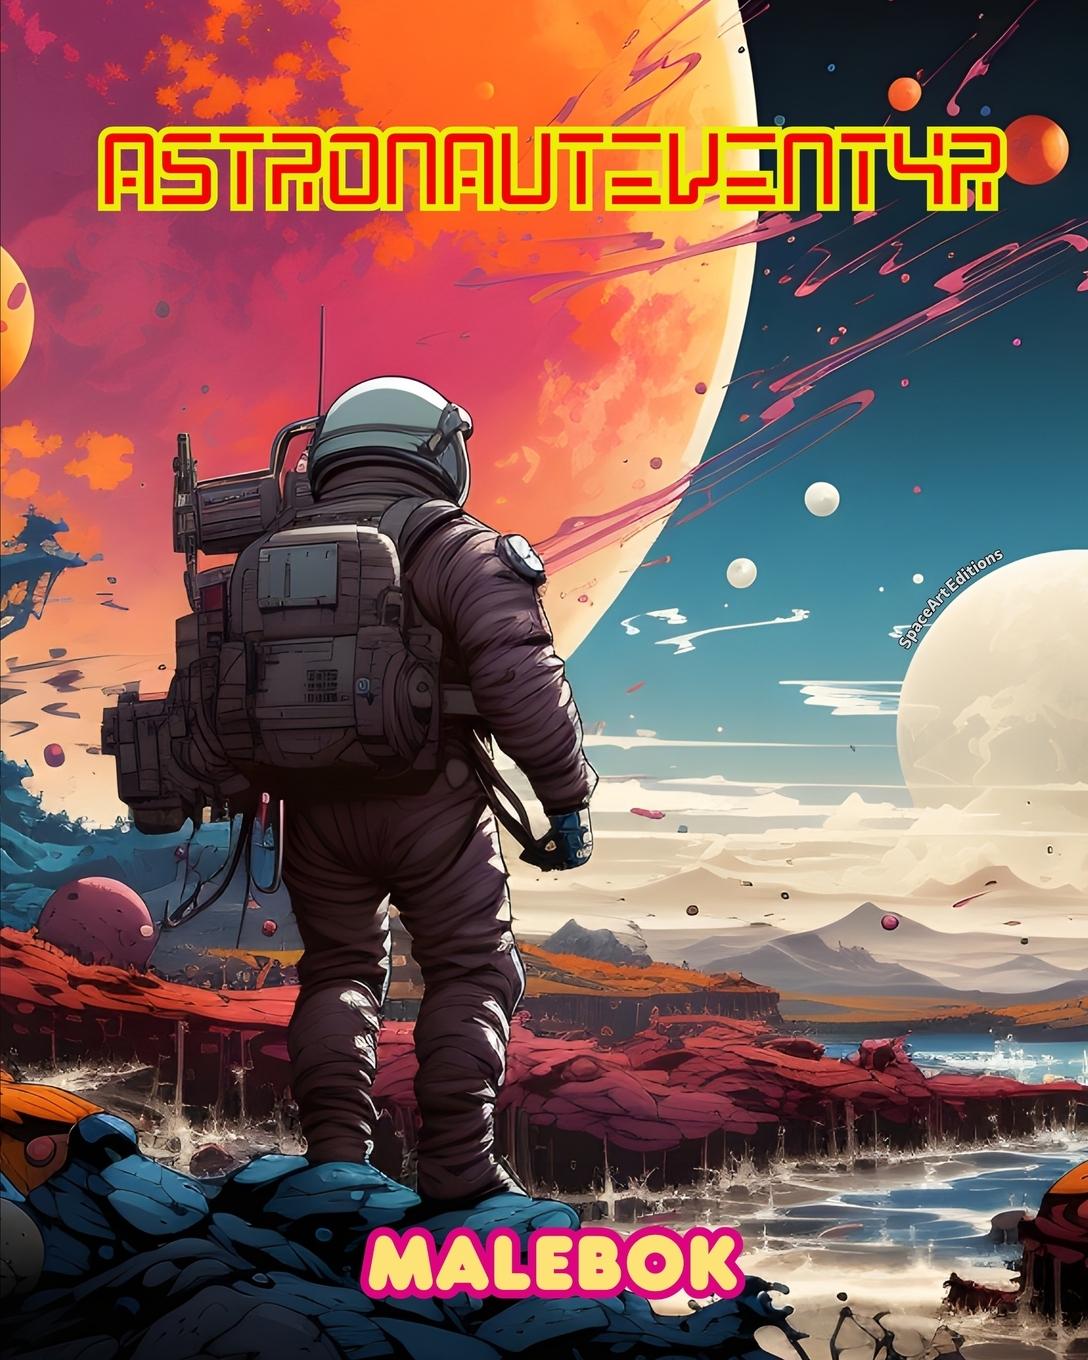 Carte Astronauteventyr - Malebok - Kunstnerisk samling av romfartsmotiver 